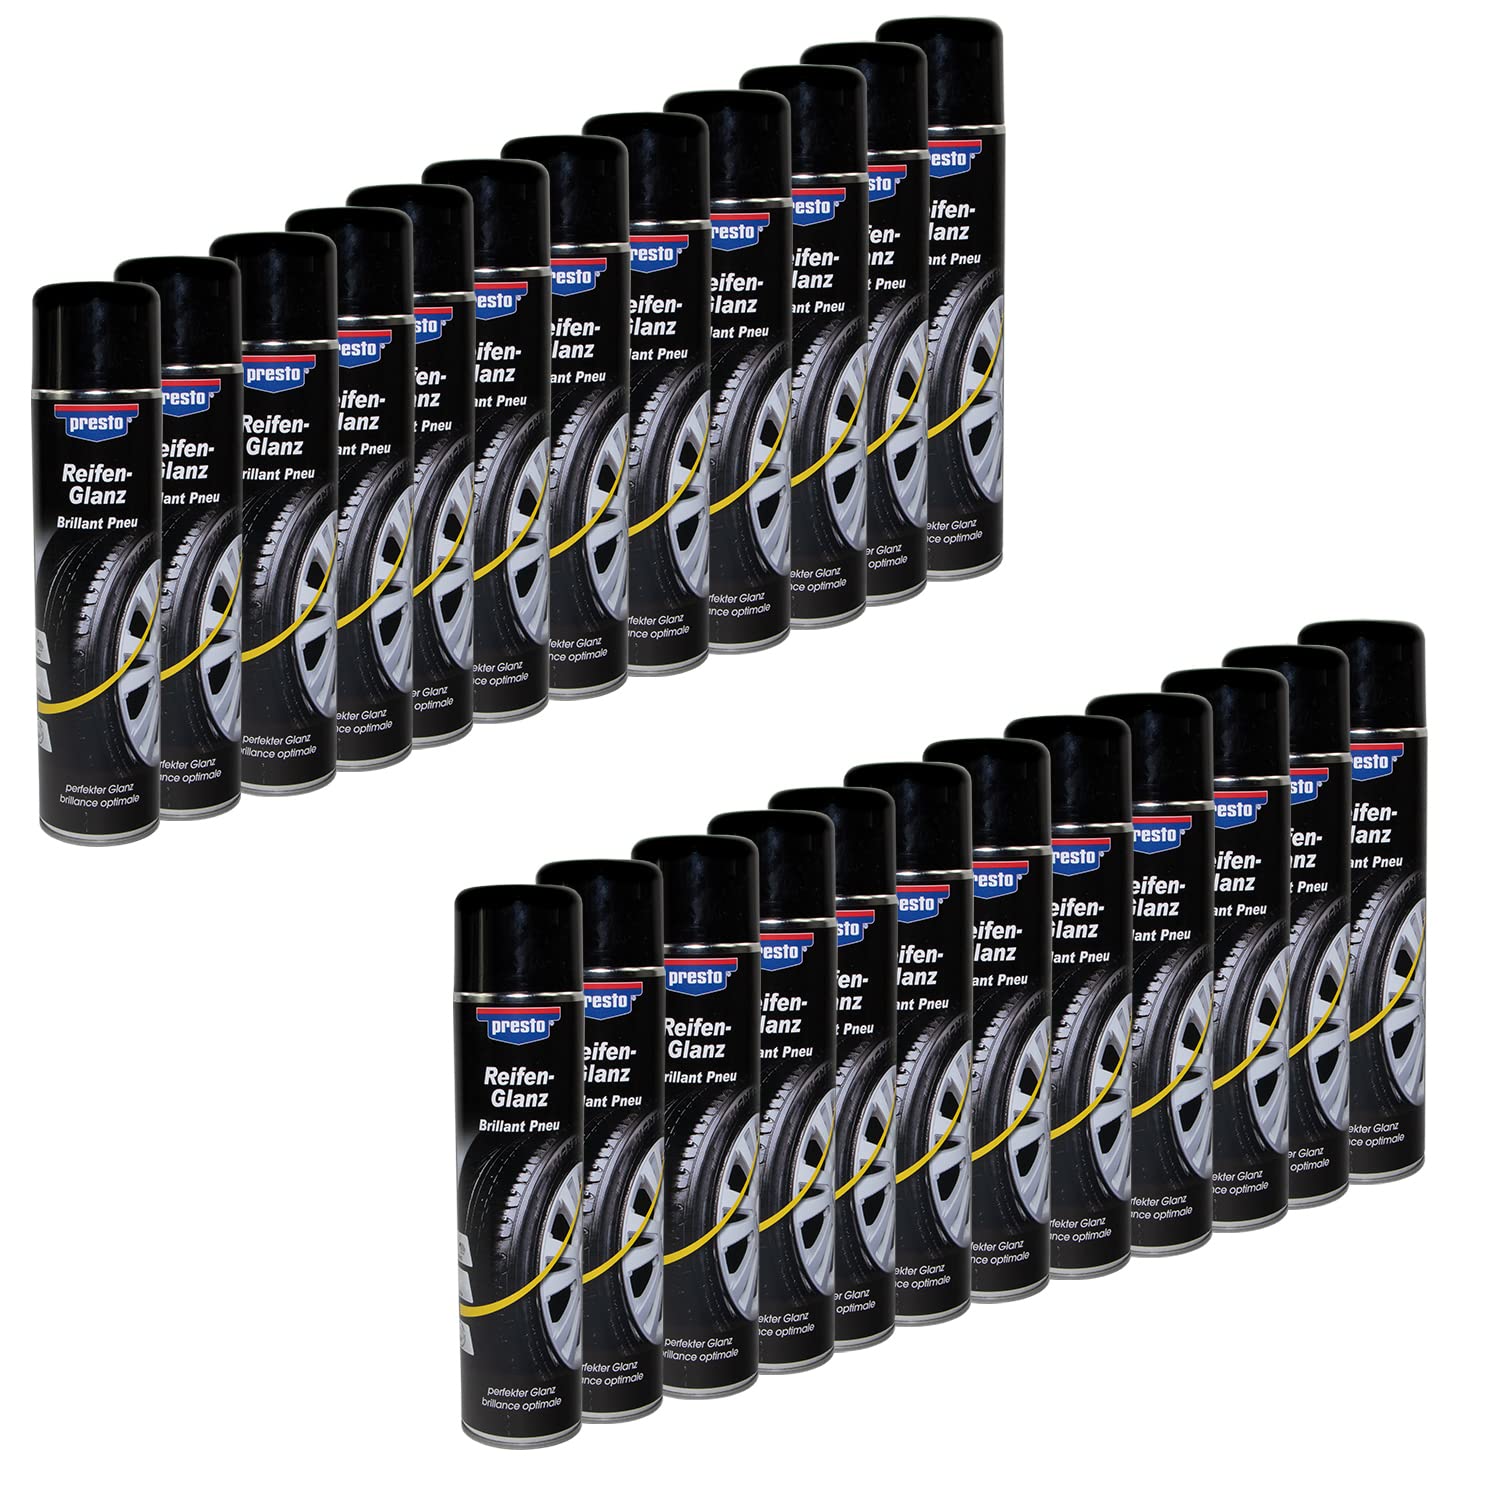 Reifenglanz Spray Reifenpflege Schutz Glanz Versiegelung Presto 383458 24 X 600 ml von PRESTO_bundle